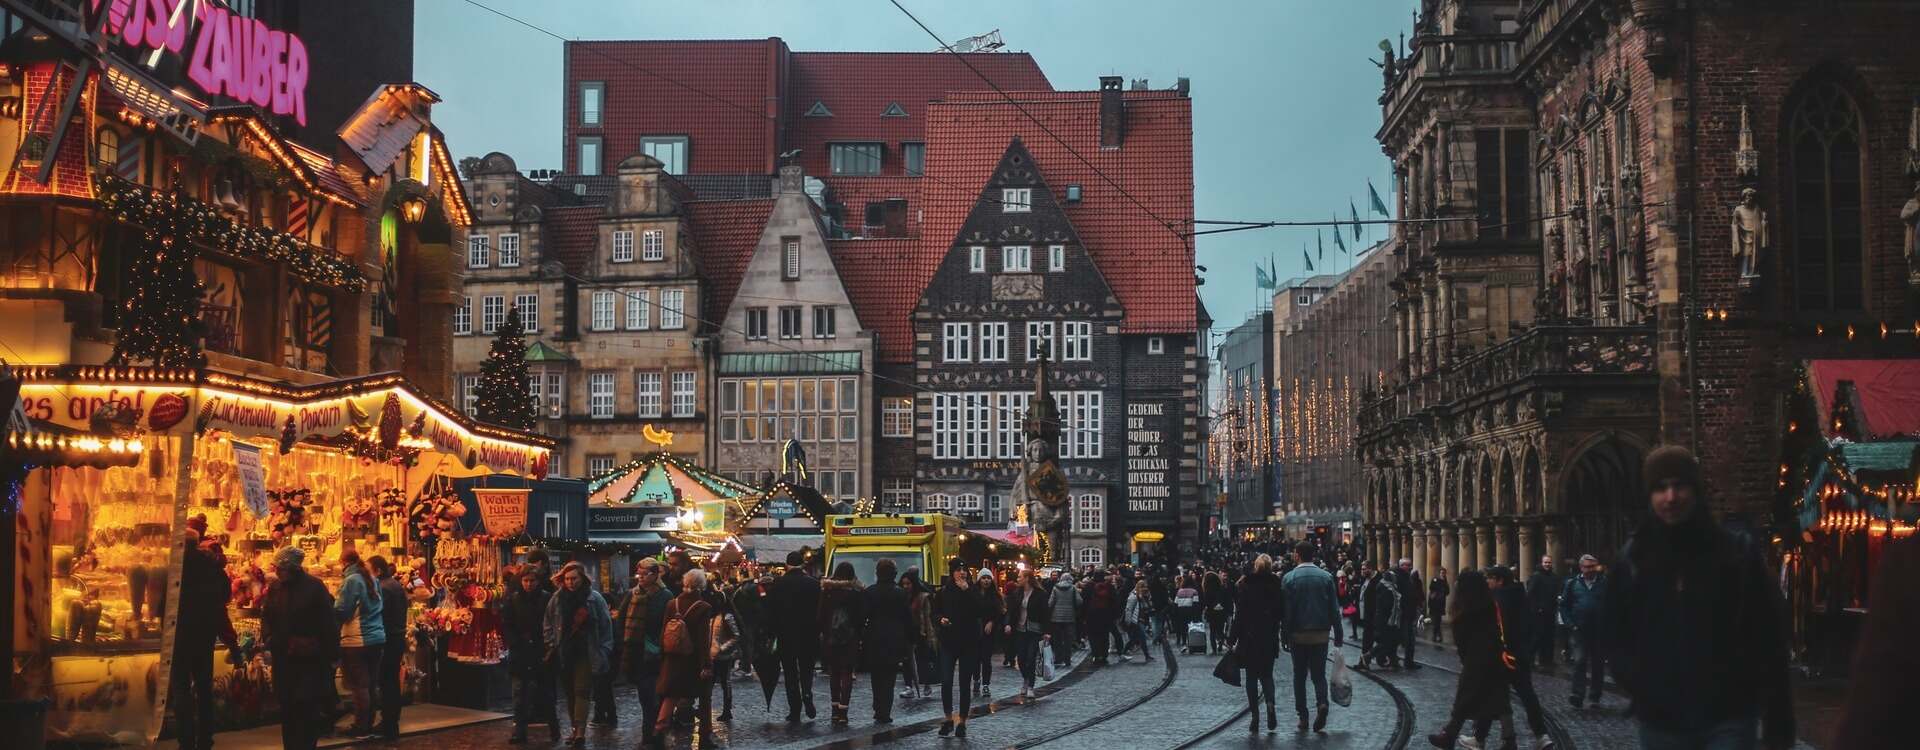 Fußgänger in Bremen die in der Straße laufen